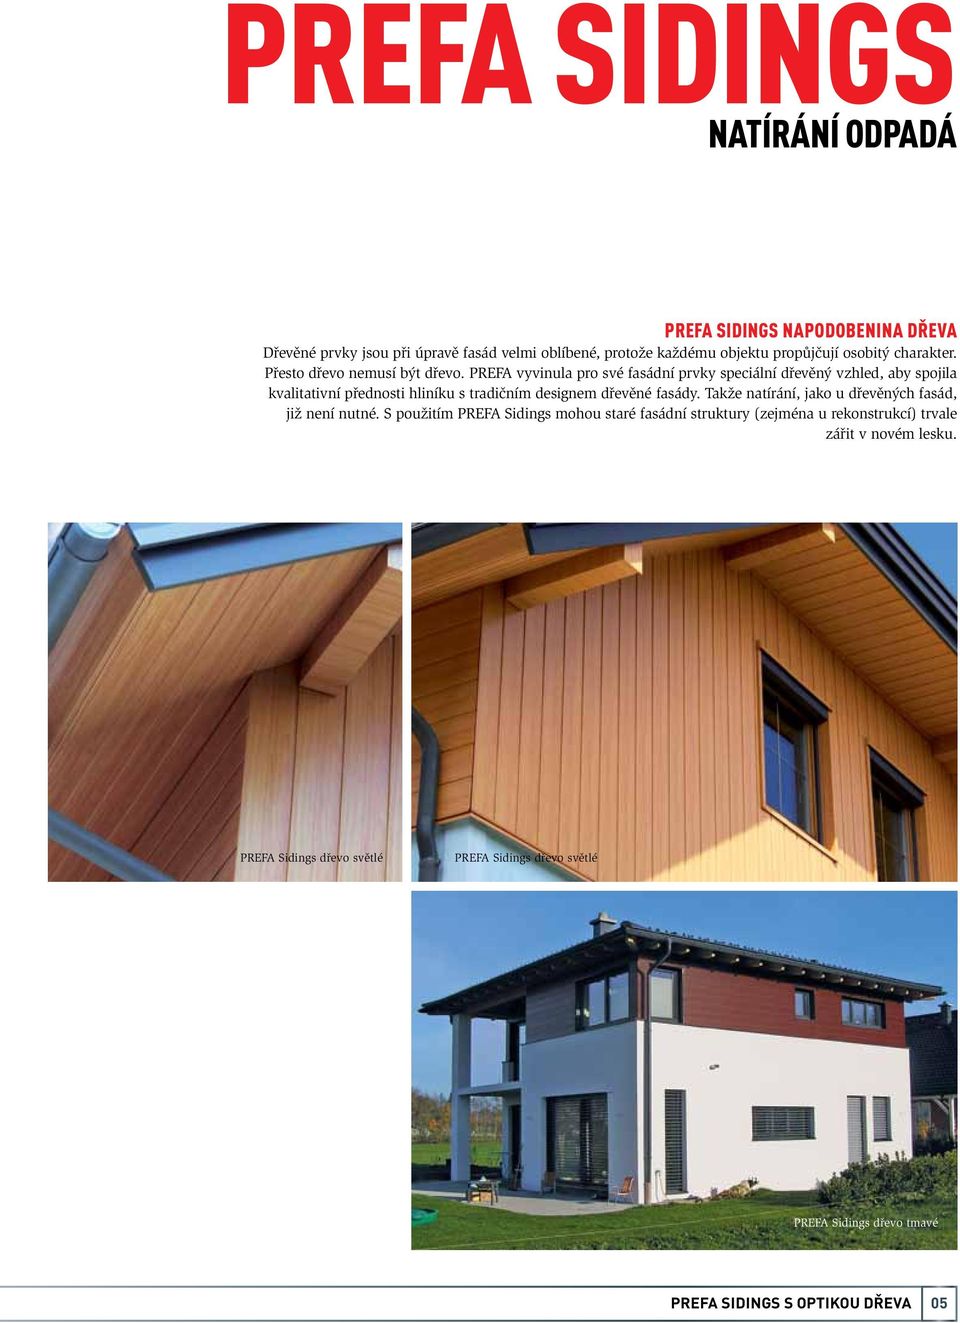 PREFA vyvinula pro své fasádní prvky speciální dřevěný vzhled, aby spojila kvalitativní přednosti hliníku s tradičním designem dřevěné fasády.